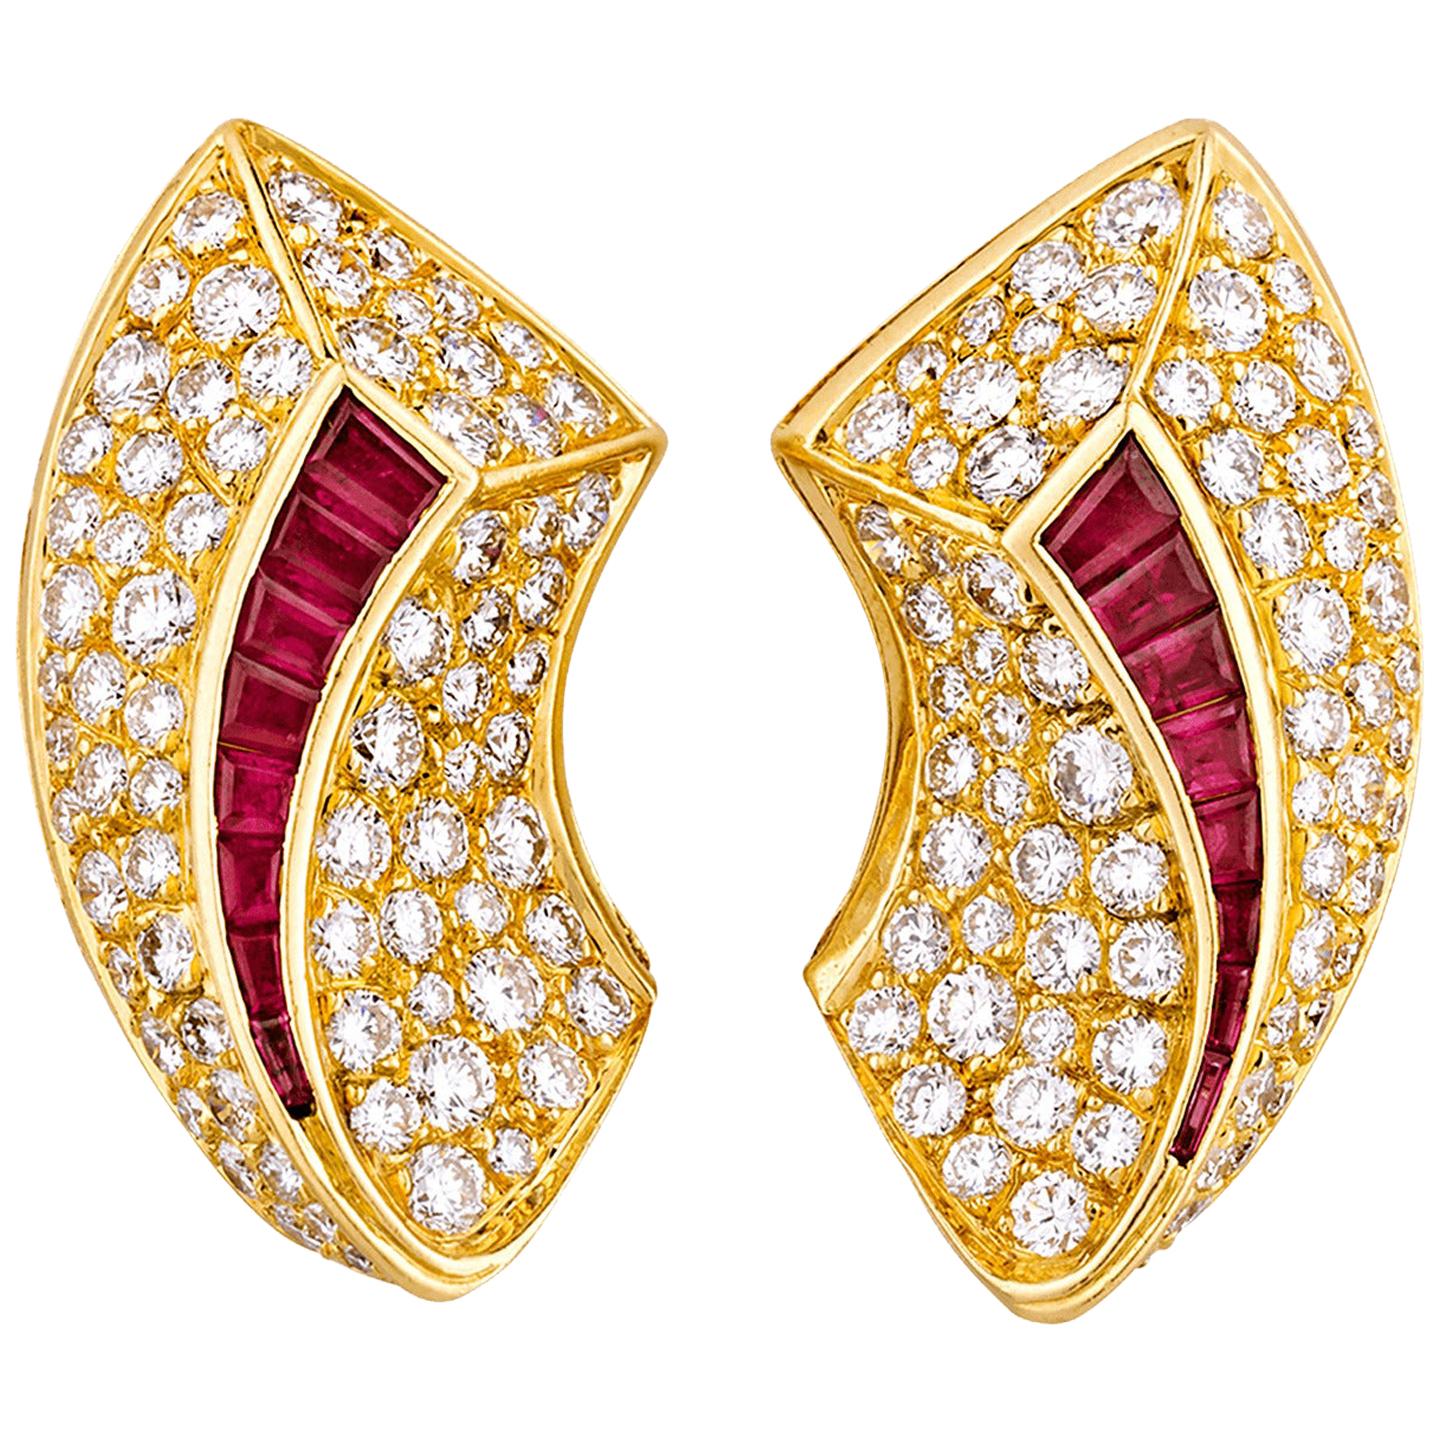 Van Cleef & Arpels Diamond and Ruby Earrings, 6.66 Carat